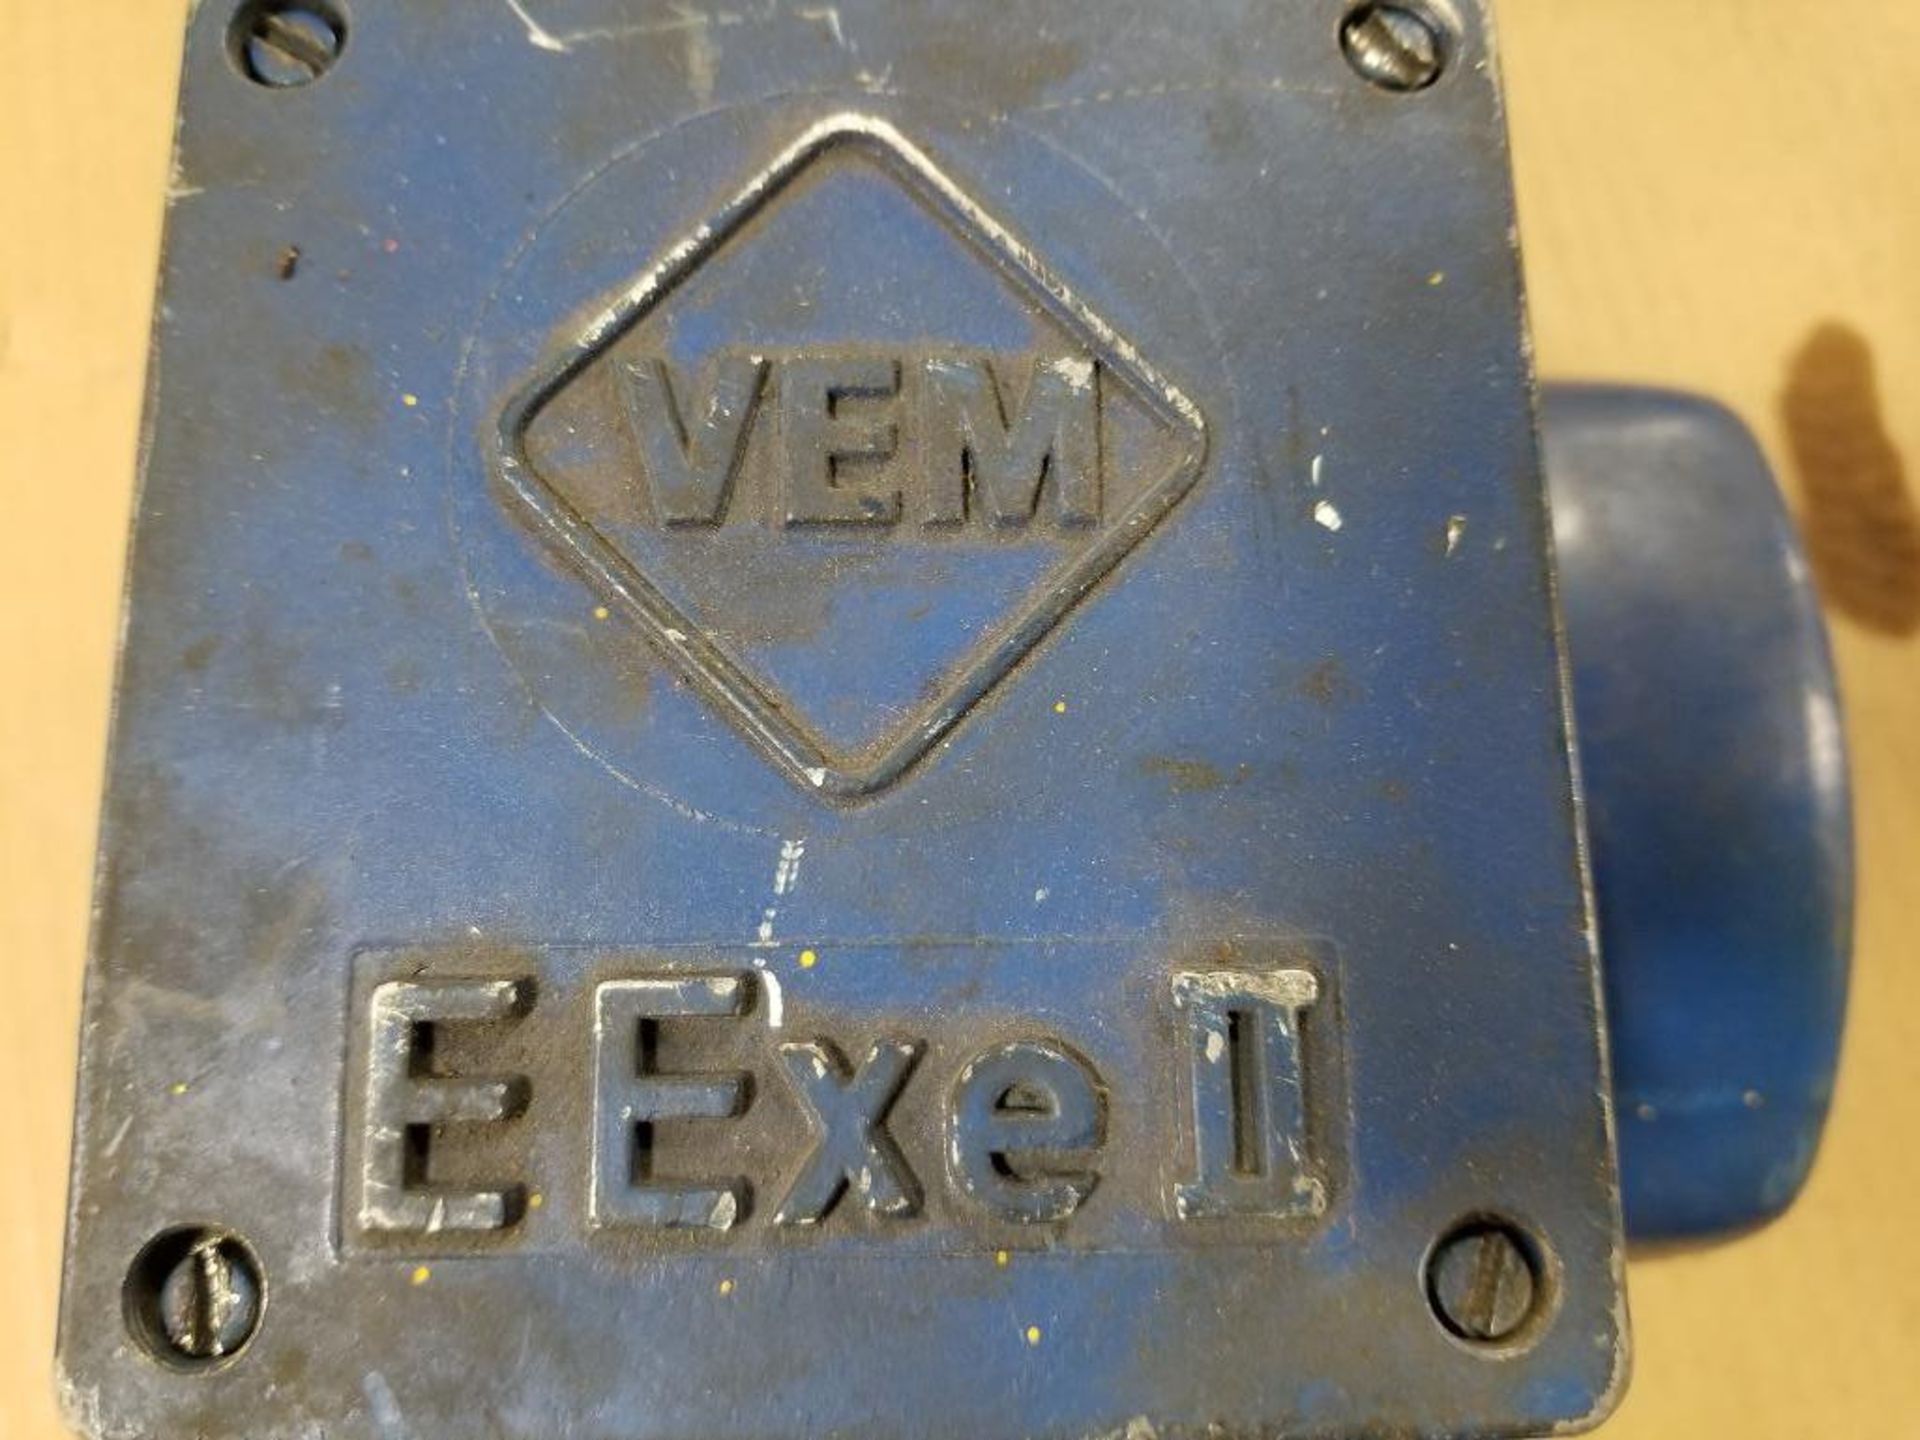 VEM motor. - Image 3 of 4